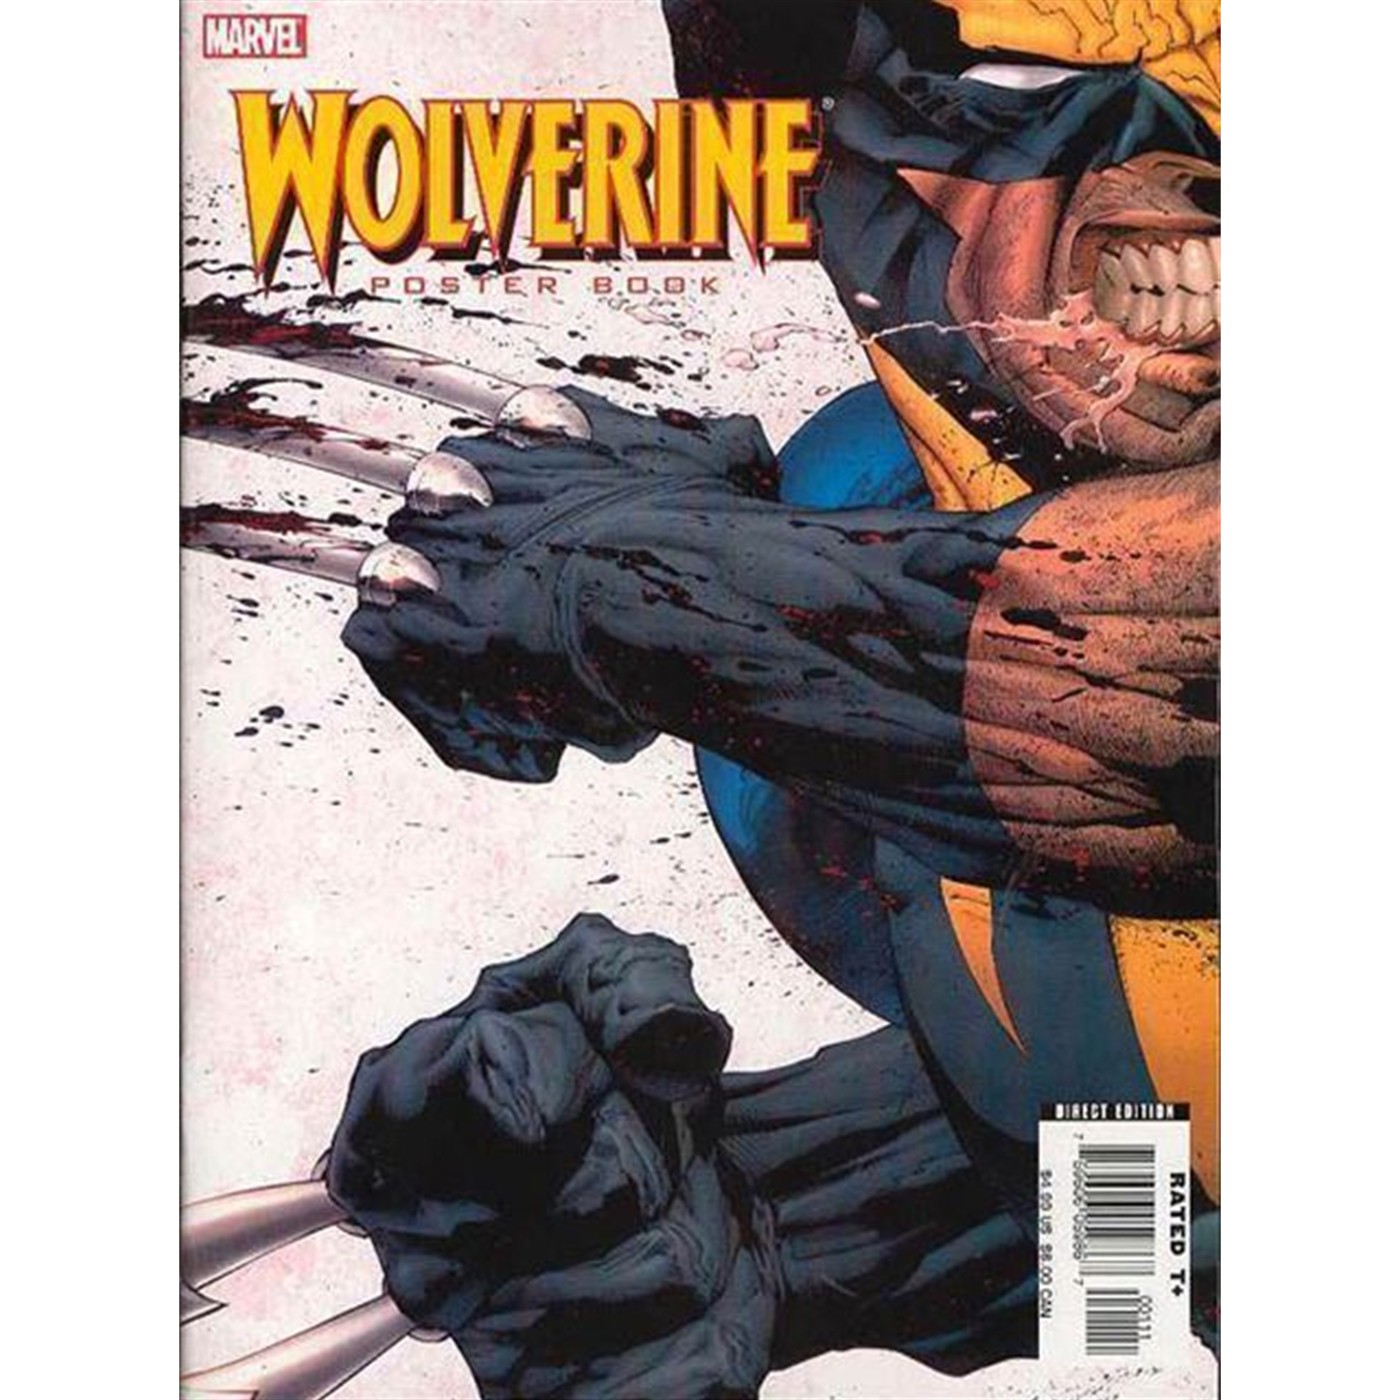 Wolverine Poster Magazine